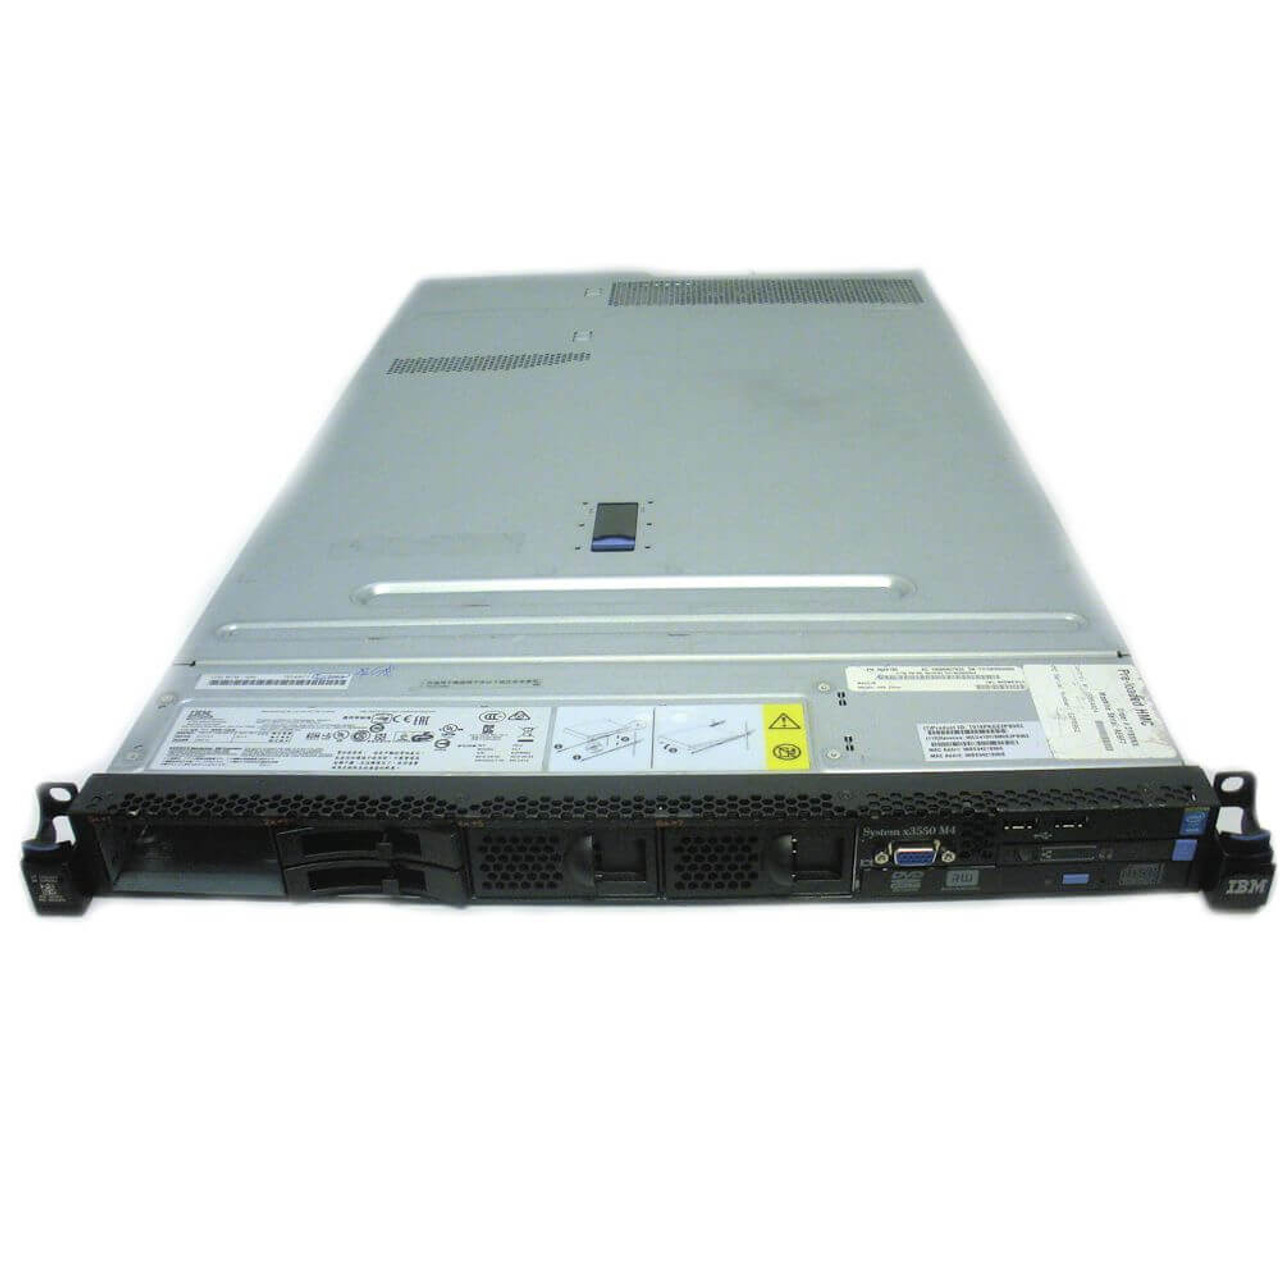 IBM 7914-AC1 Server x3550 M4 0x0 Base